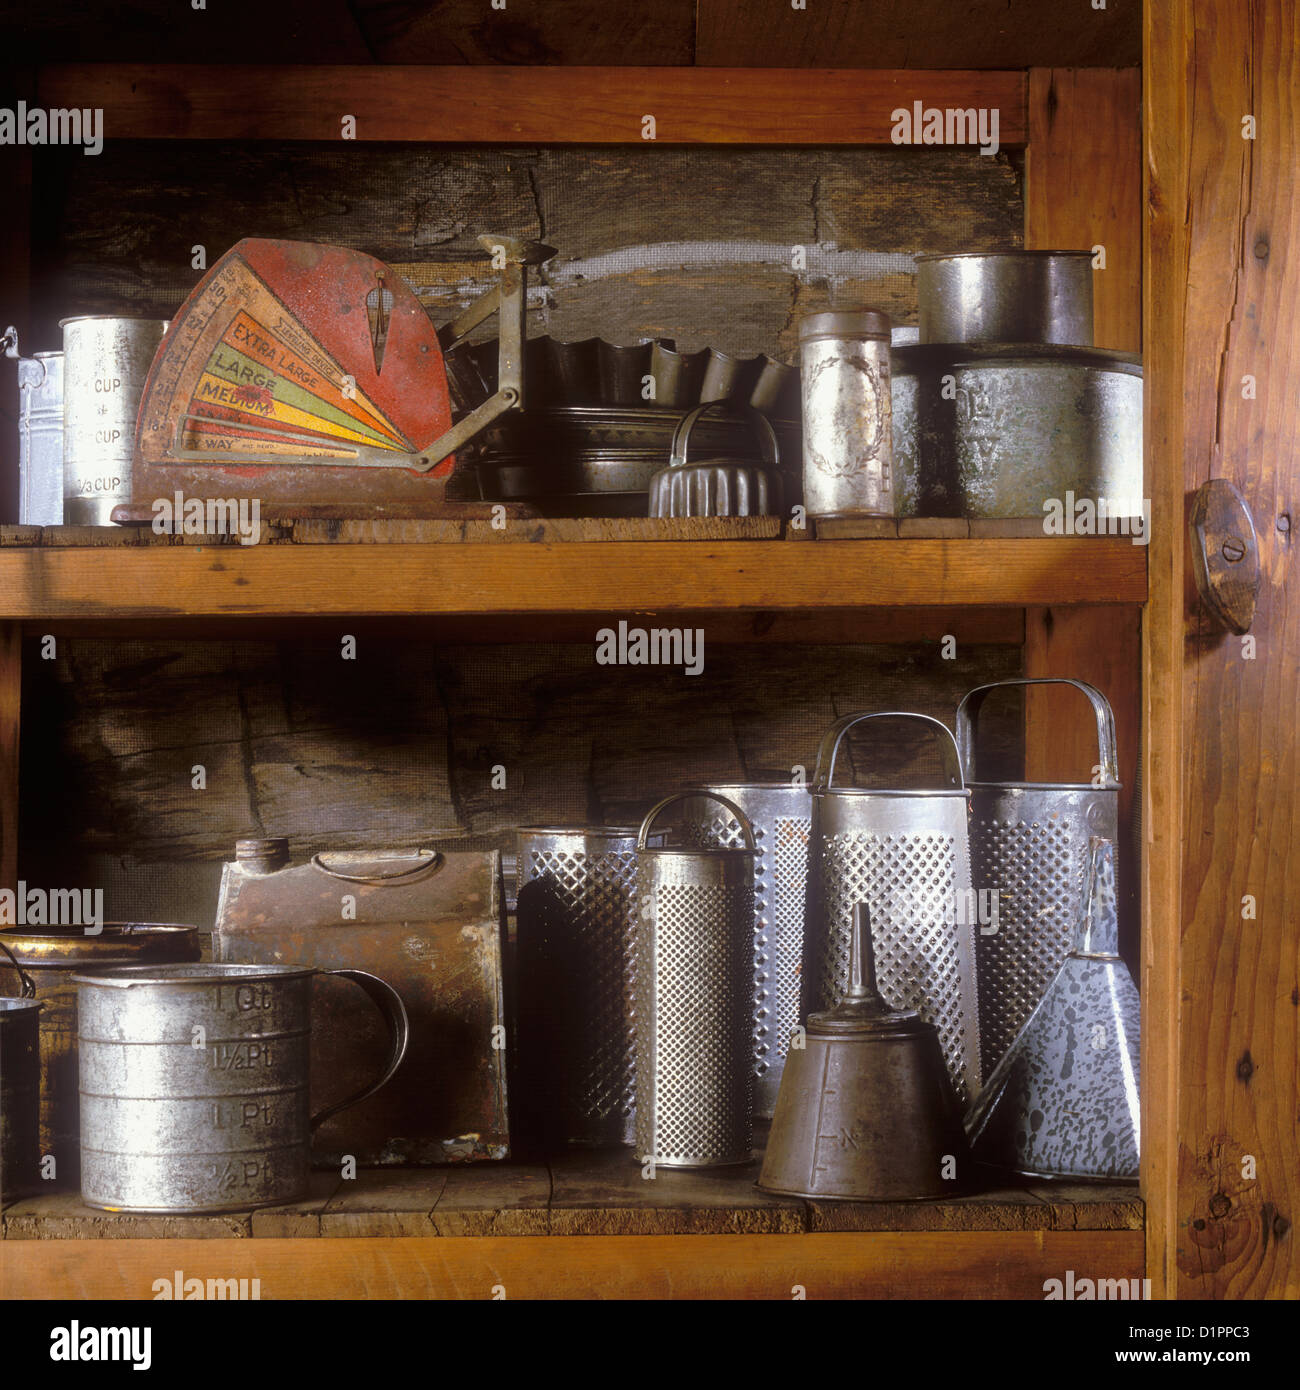 La collection affiche - cuisine Vintage met en œuvre vont de la niveleuse d'oeufs de râpes, bidons d'huile, vintage tin ware, etc. Banque D'Images